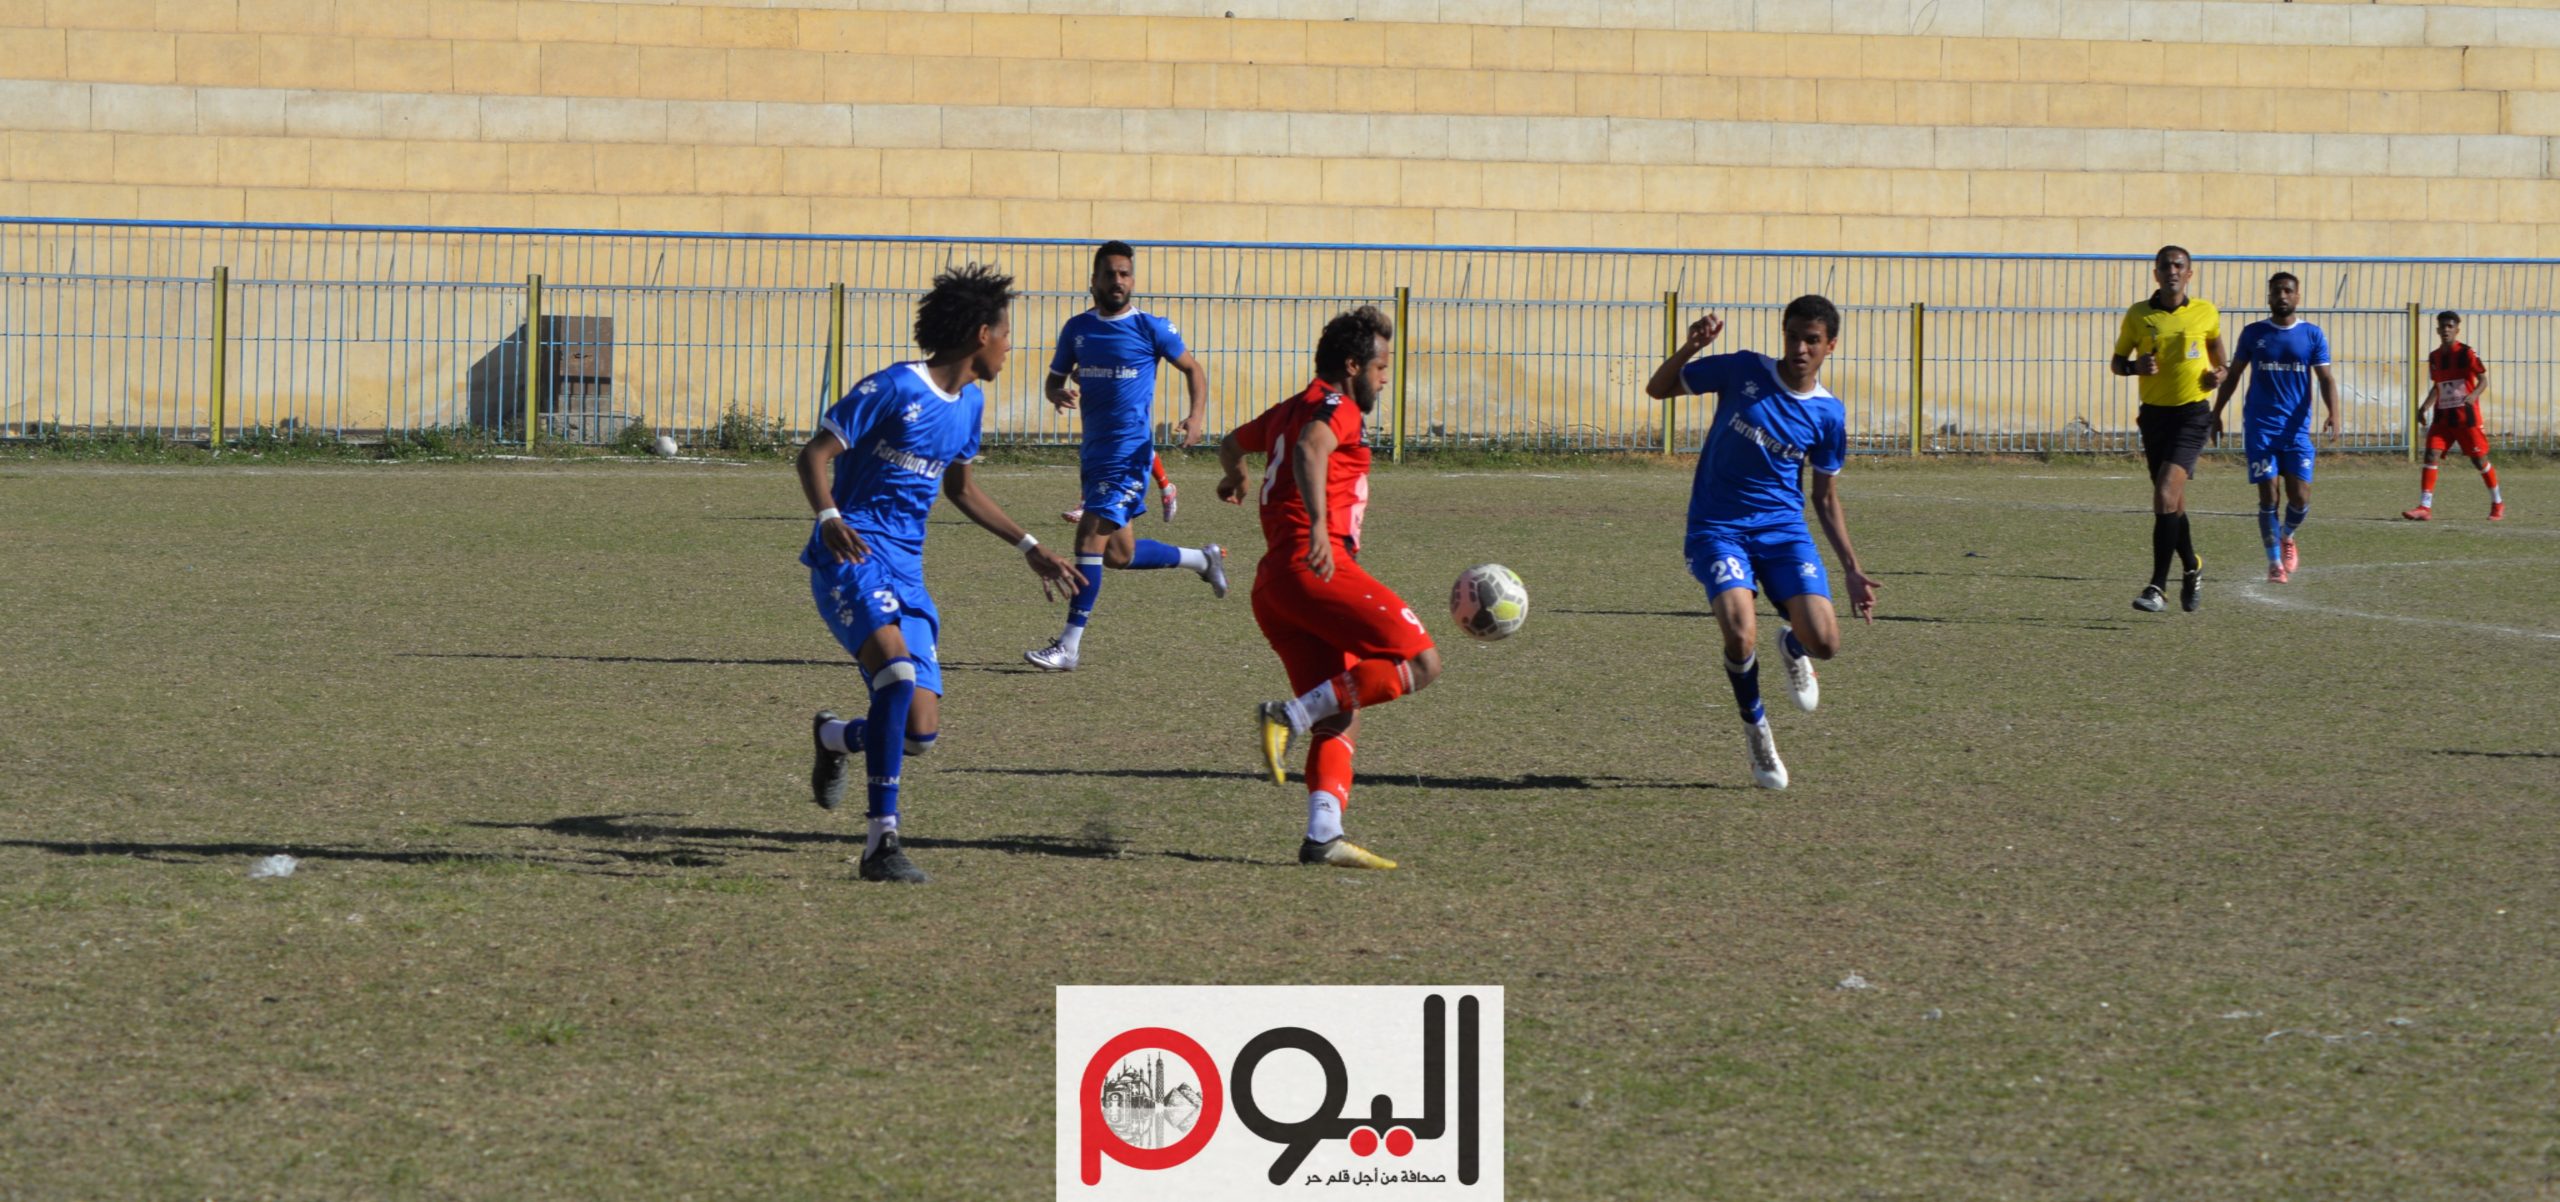 أحمد عبدالكريم لاعب نادي قنا، تصوير نورهان ذكي